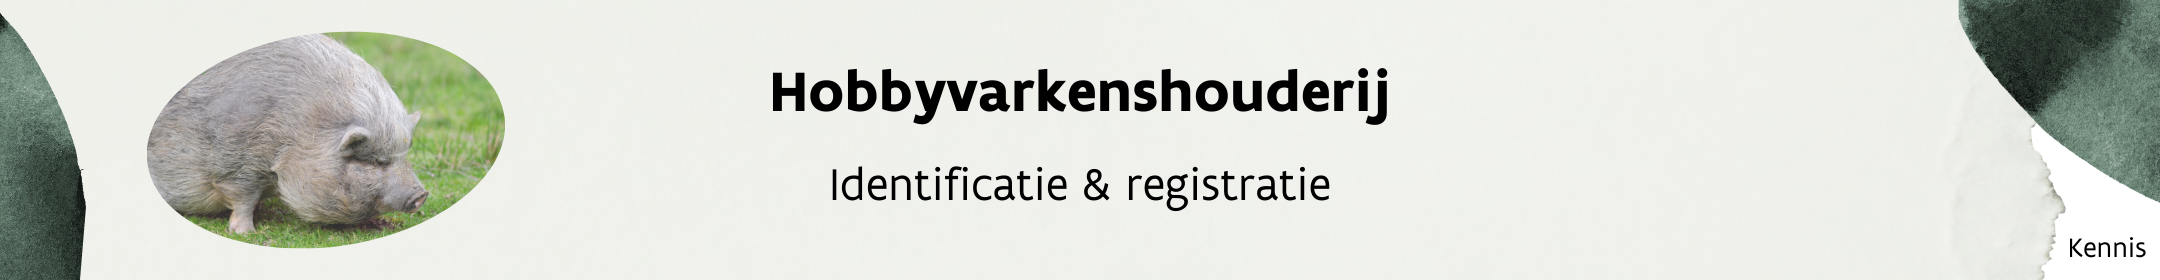 Header_hobbyvarkens_registratie